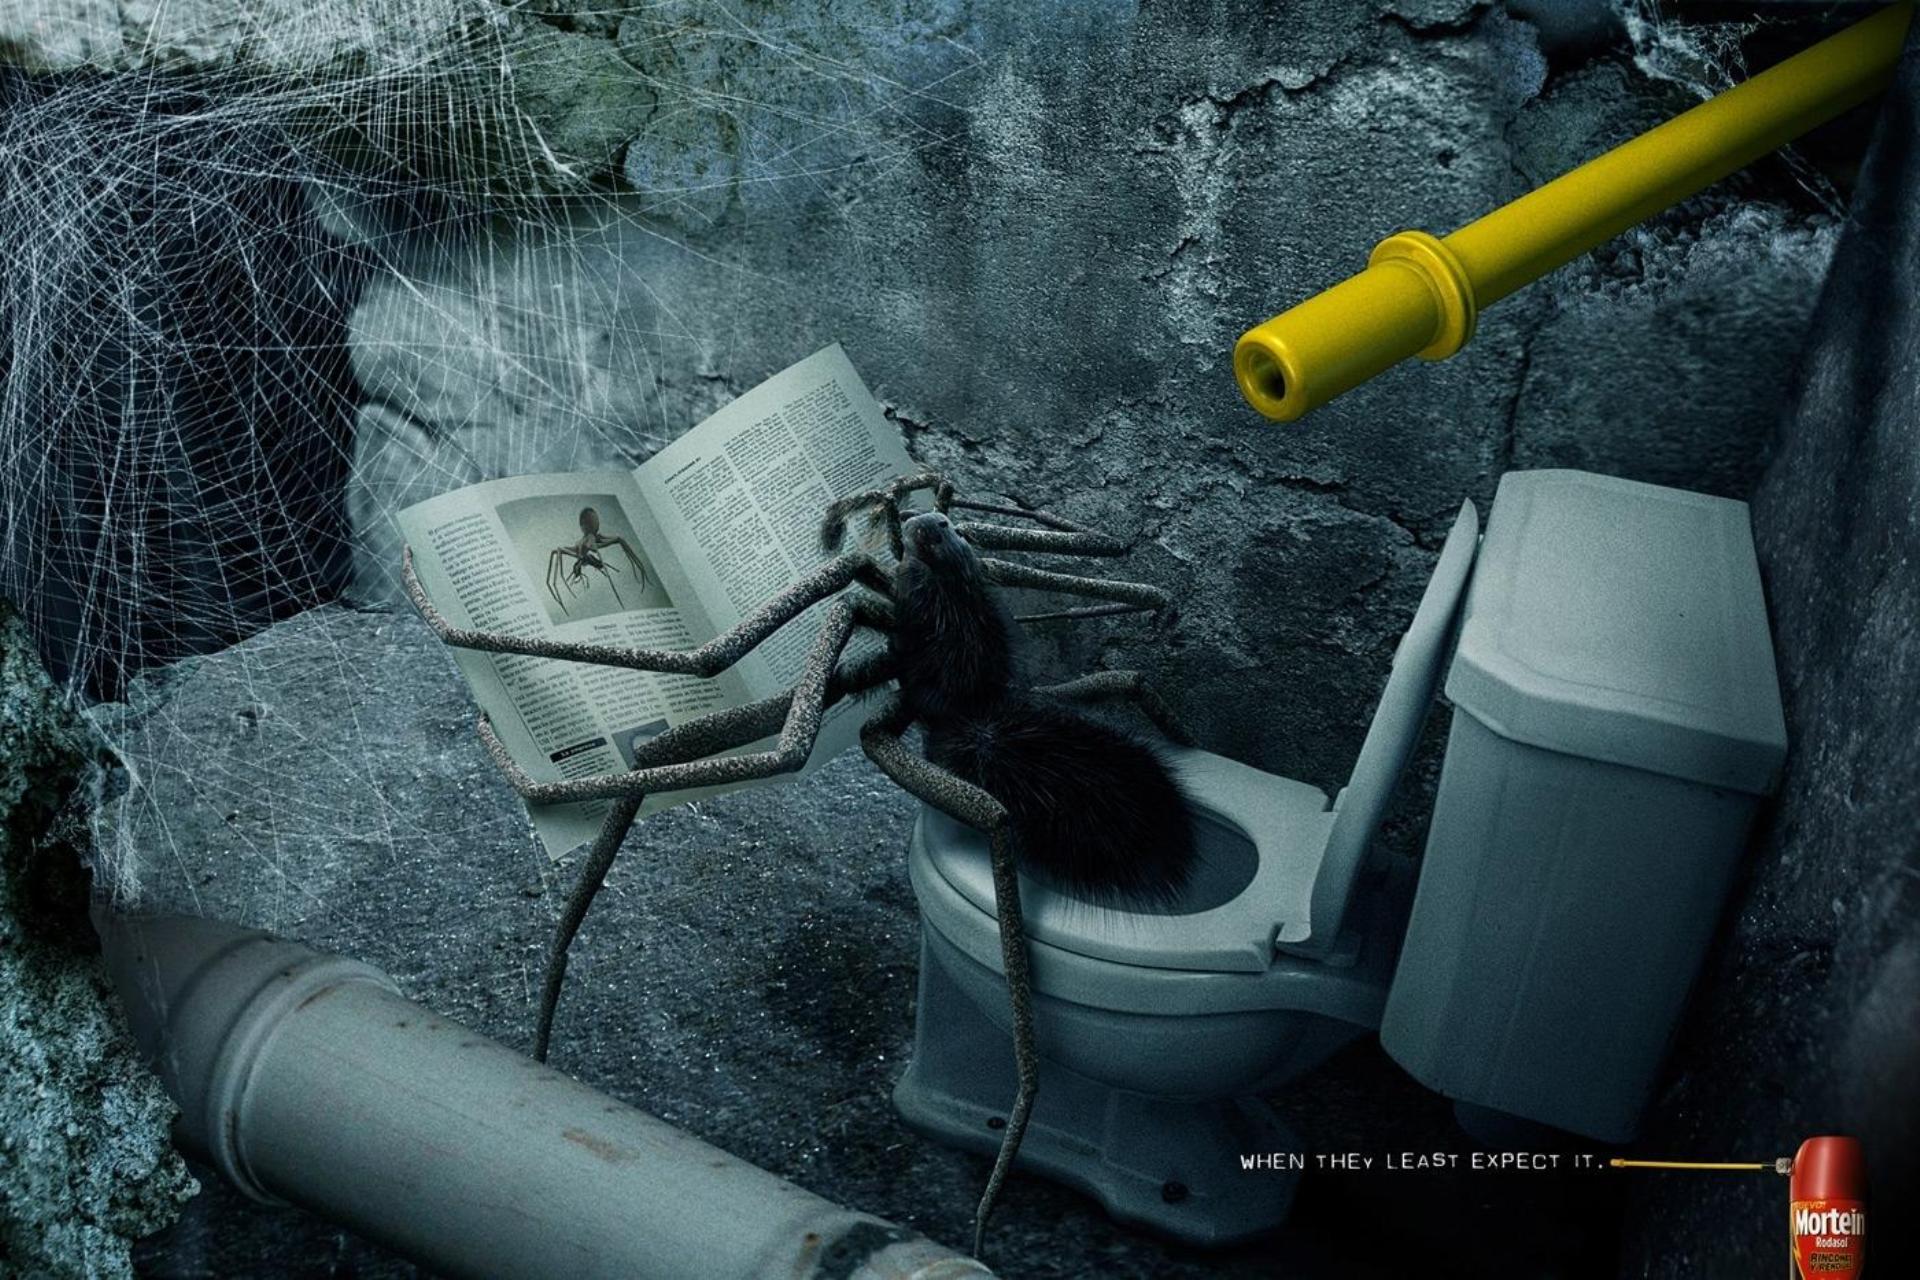 Спайдер туалет. Креативная реклама. Канализационный паук. Креативная реклама унитазов.